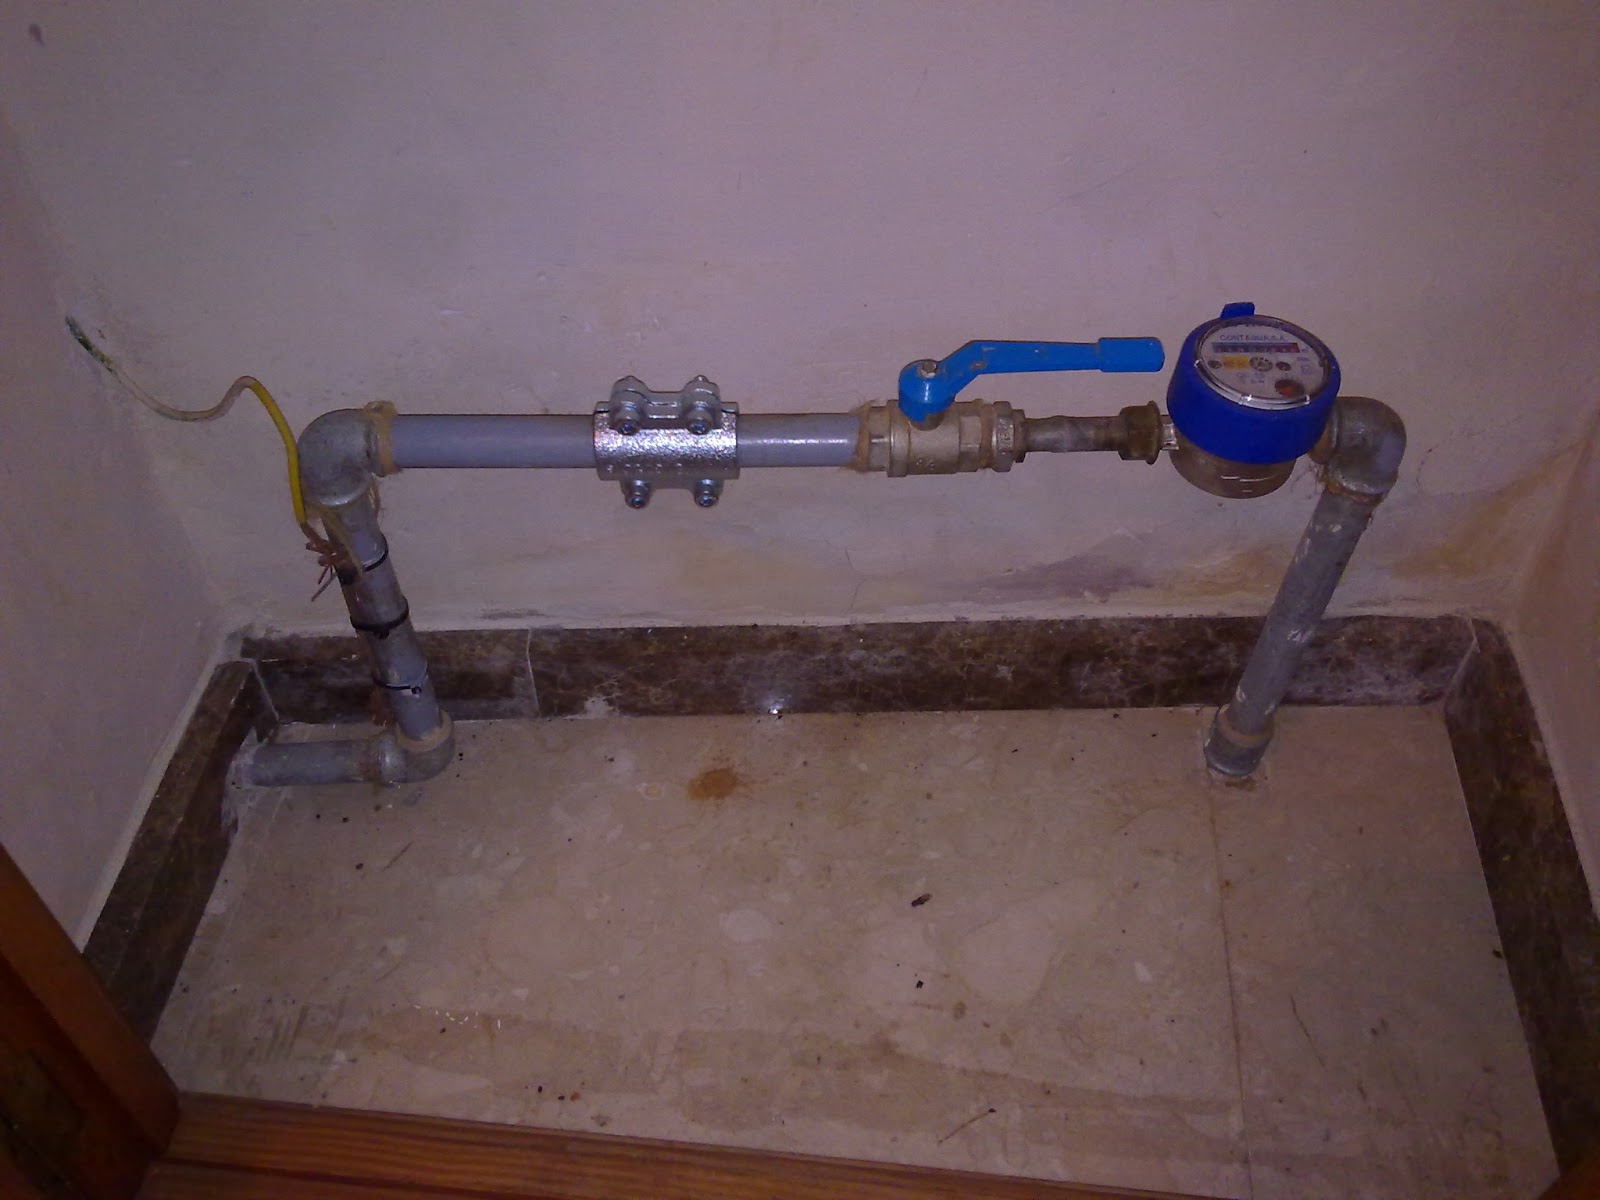 BCR Soluciones Informáticas y Reparaciones: Instalación de un filtro de  sedimentos